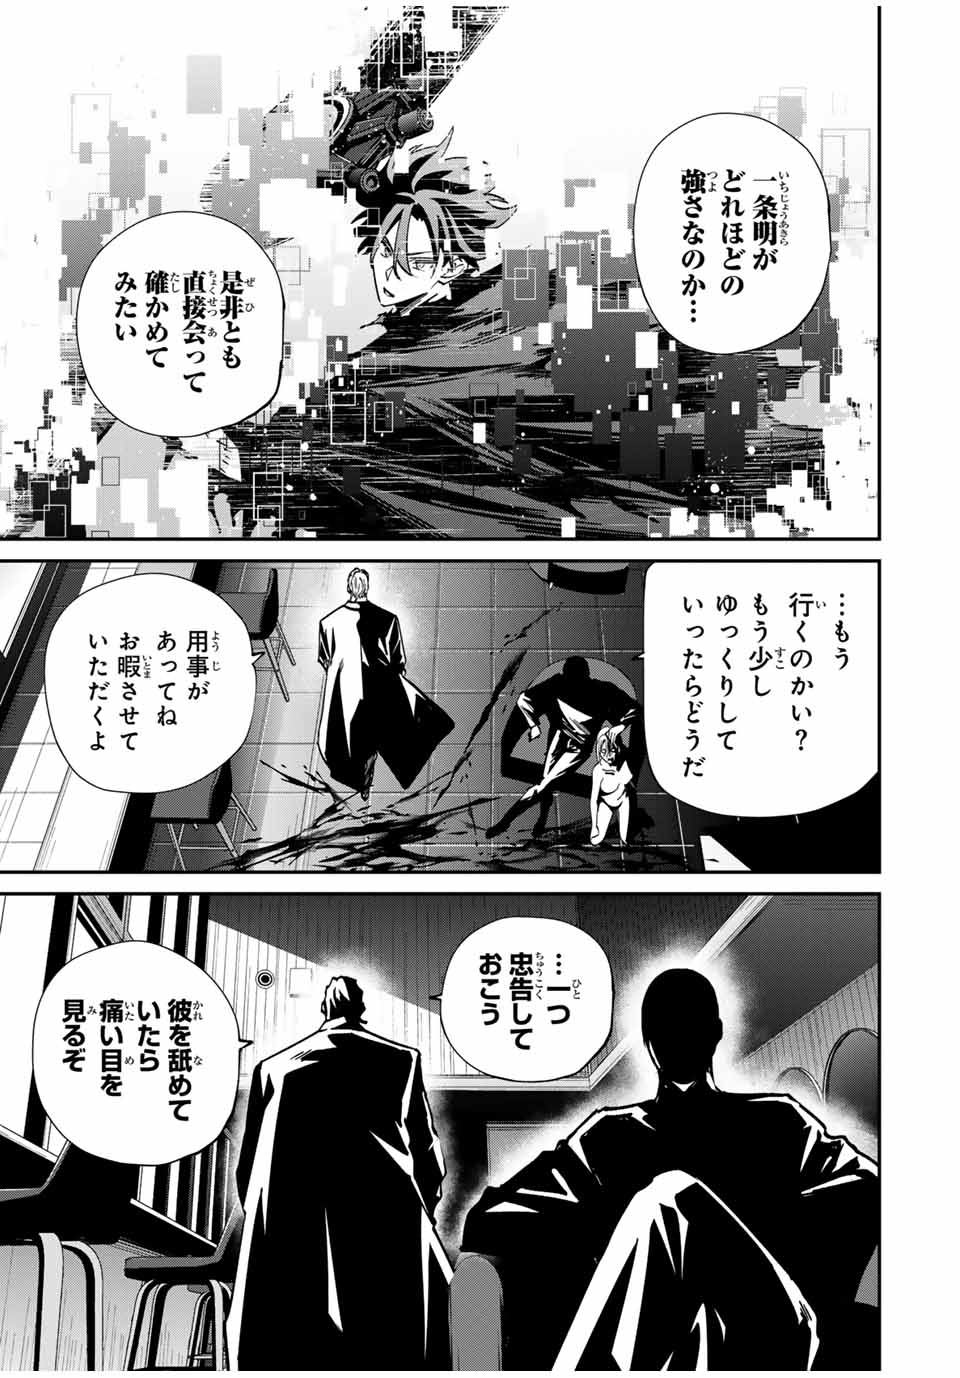 Kono Sekai ga Izure Horobu Koto wo, Ore dake ga Shitte Iru - Chapter 56 - Page 3